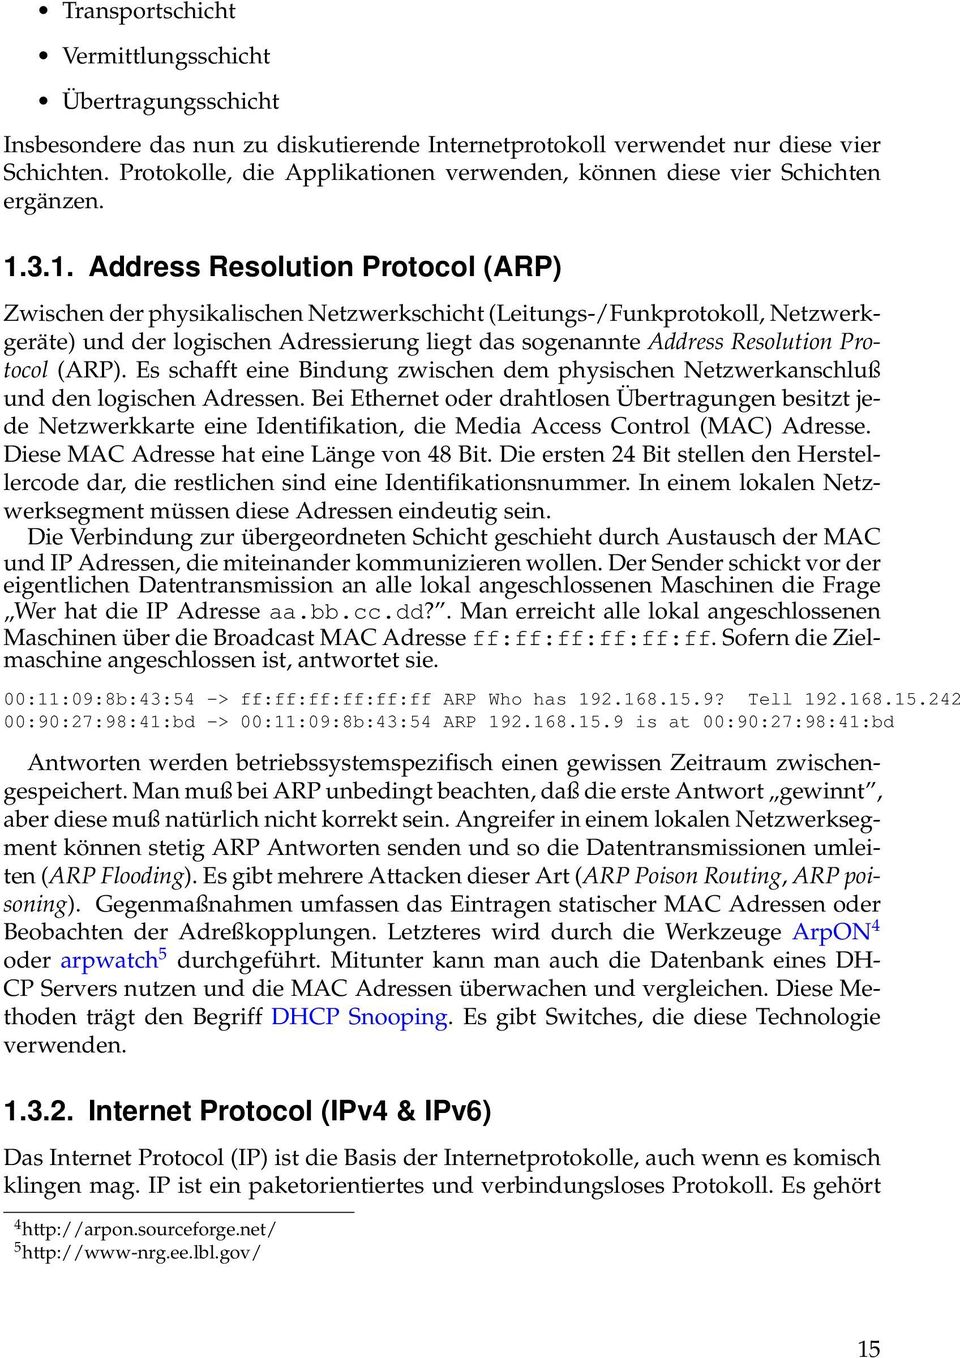 3.1. Address Resolution Protocol (ARP) Zwischen der physikalischen Netzwerkschicht (Leitungs-/Funkprotokoll, Netzwerkgeräte) und der logischen Adressierung liegt das sogenannte Address Resolution